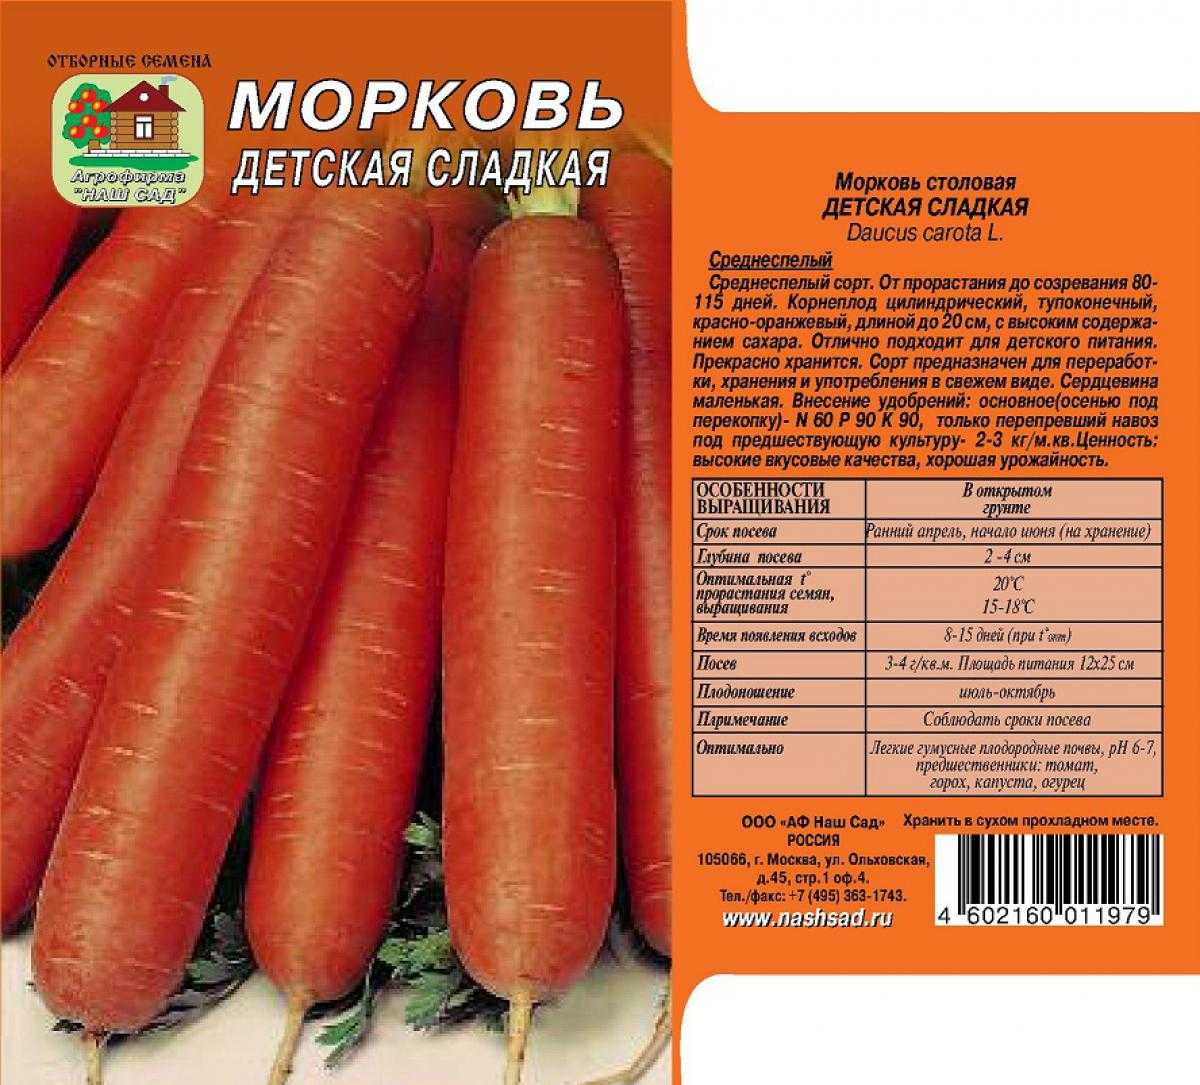 Сорта моркови: 50 лучших видов с описаниями и характеристиками + фото